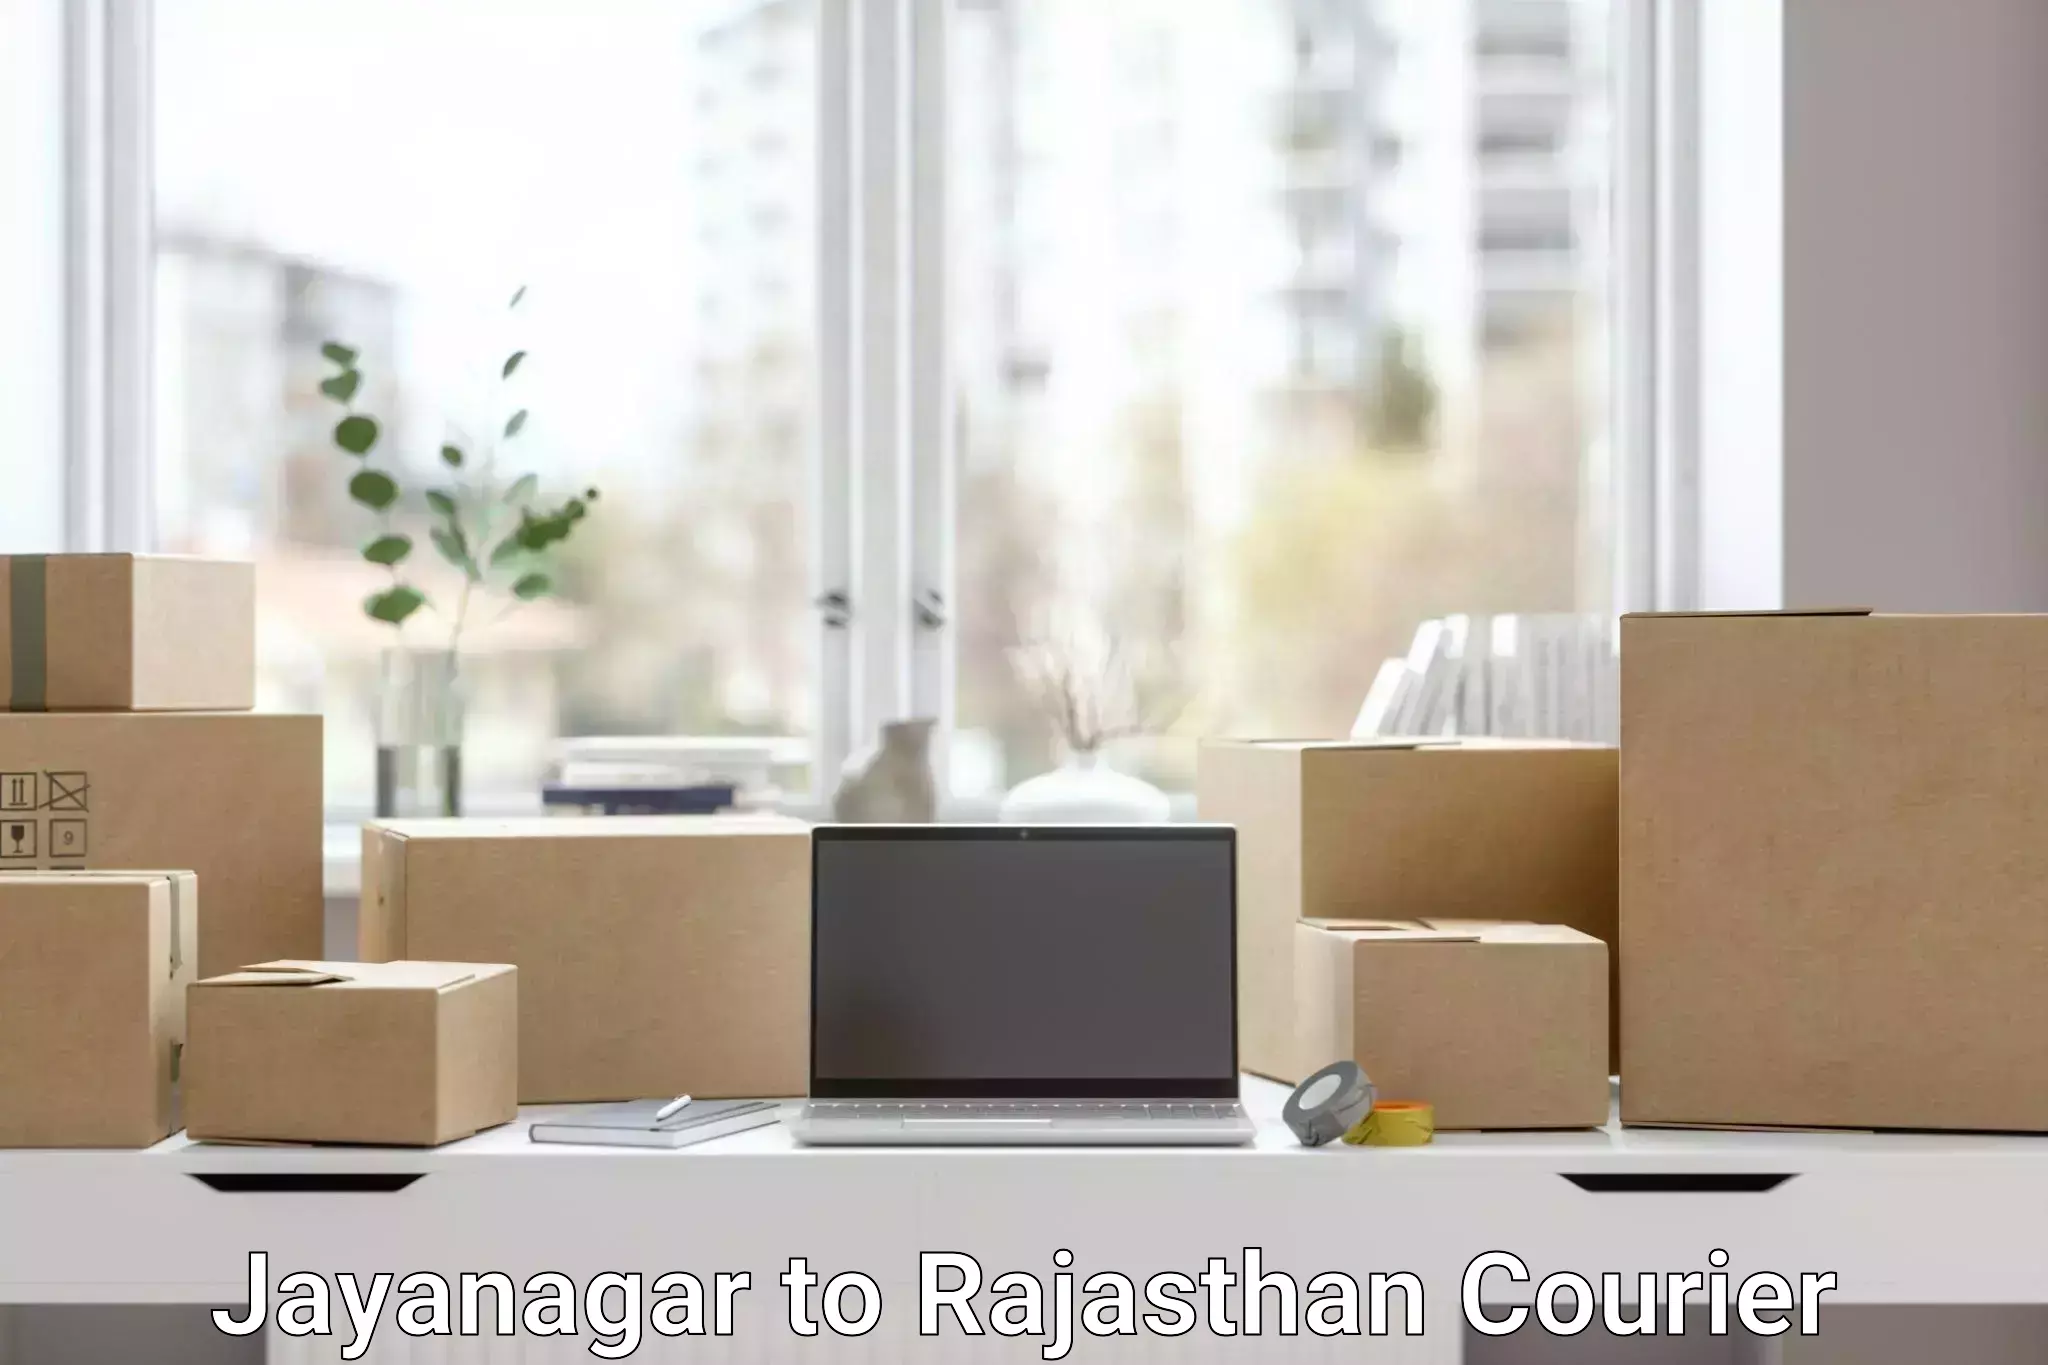 Courier service comparison in Jayanagar to Nokha